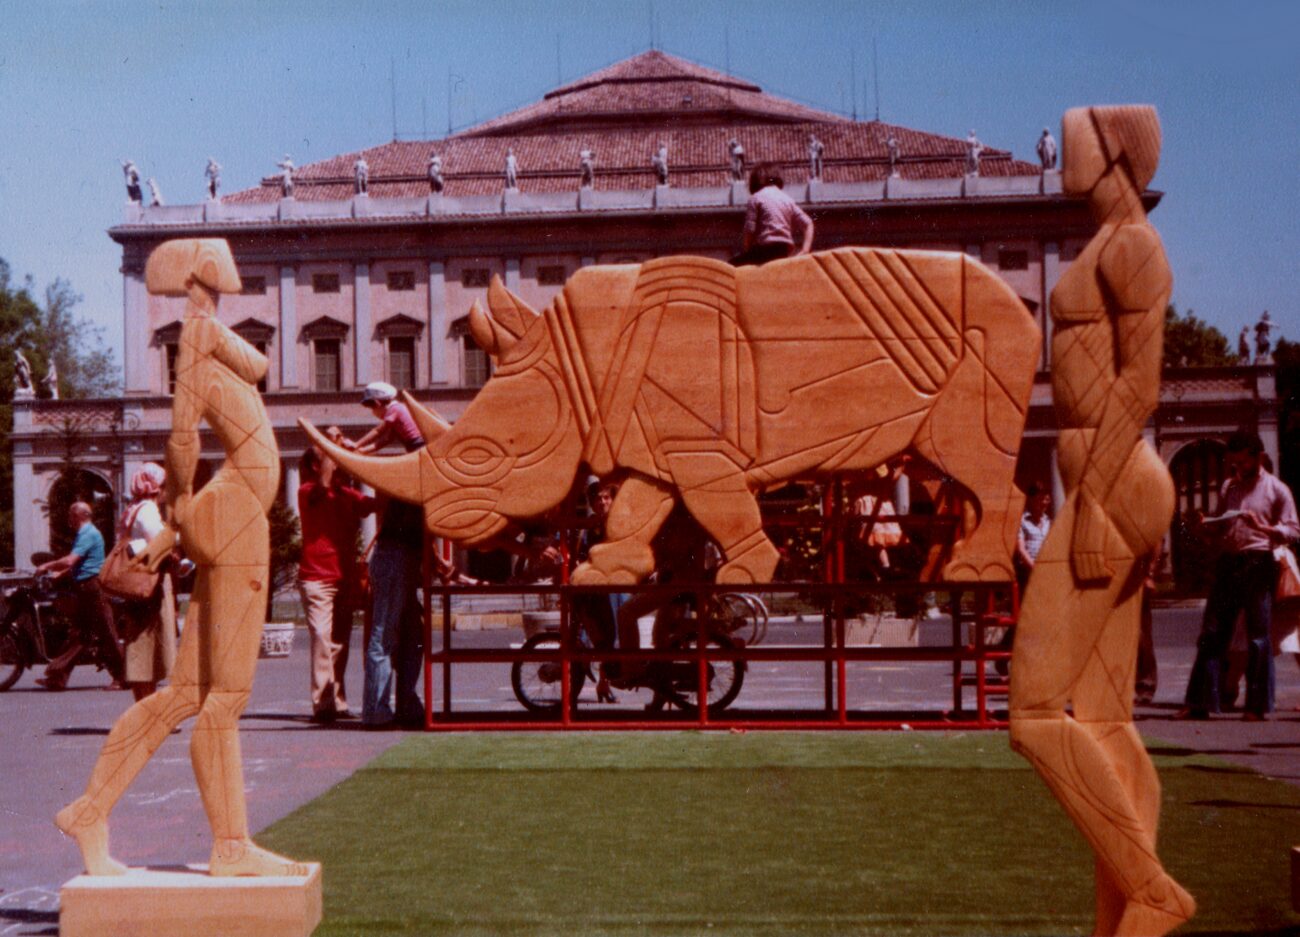 1979 Scultura-gioco Rinoceronte, Comune di Reggio Emilia 1